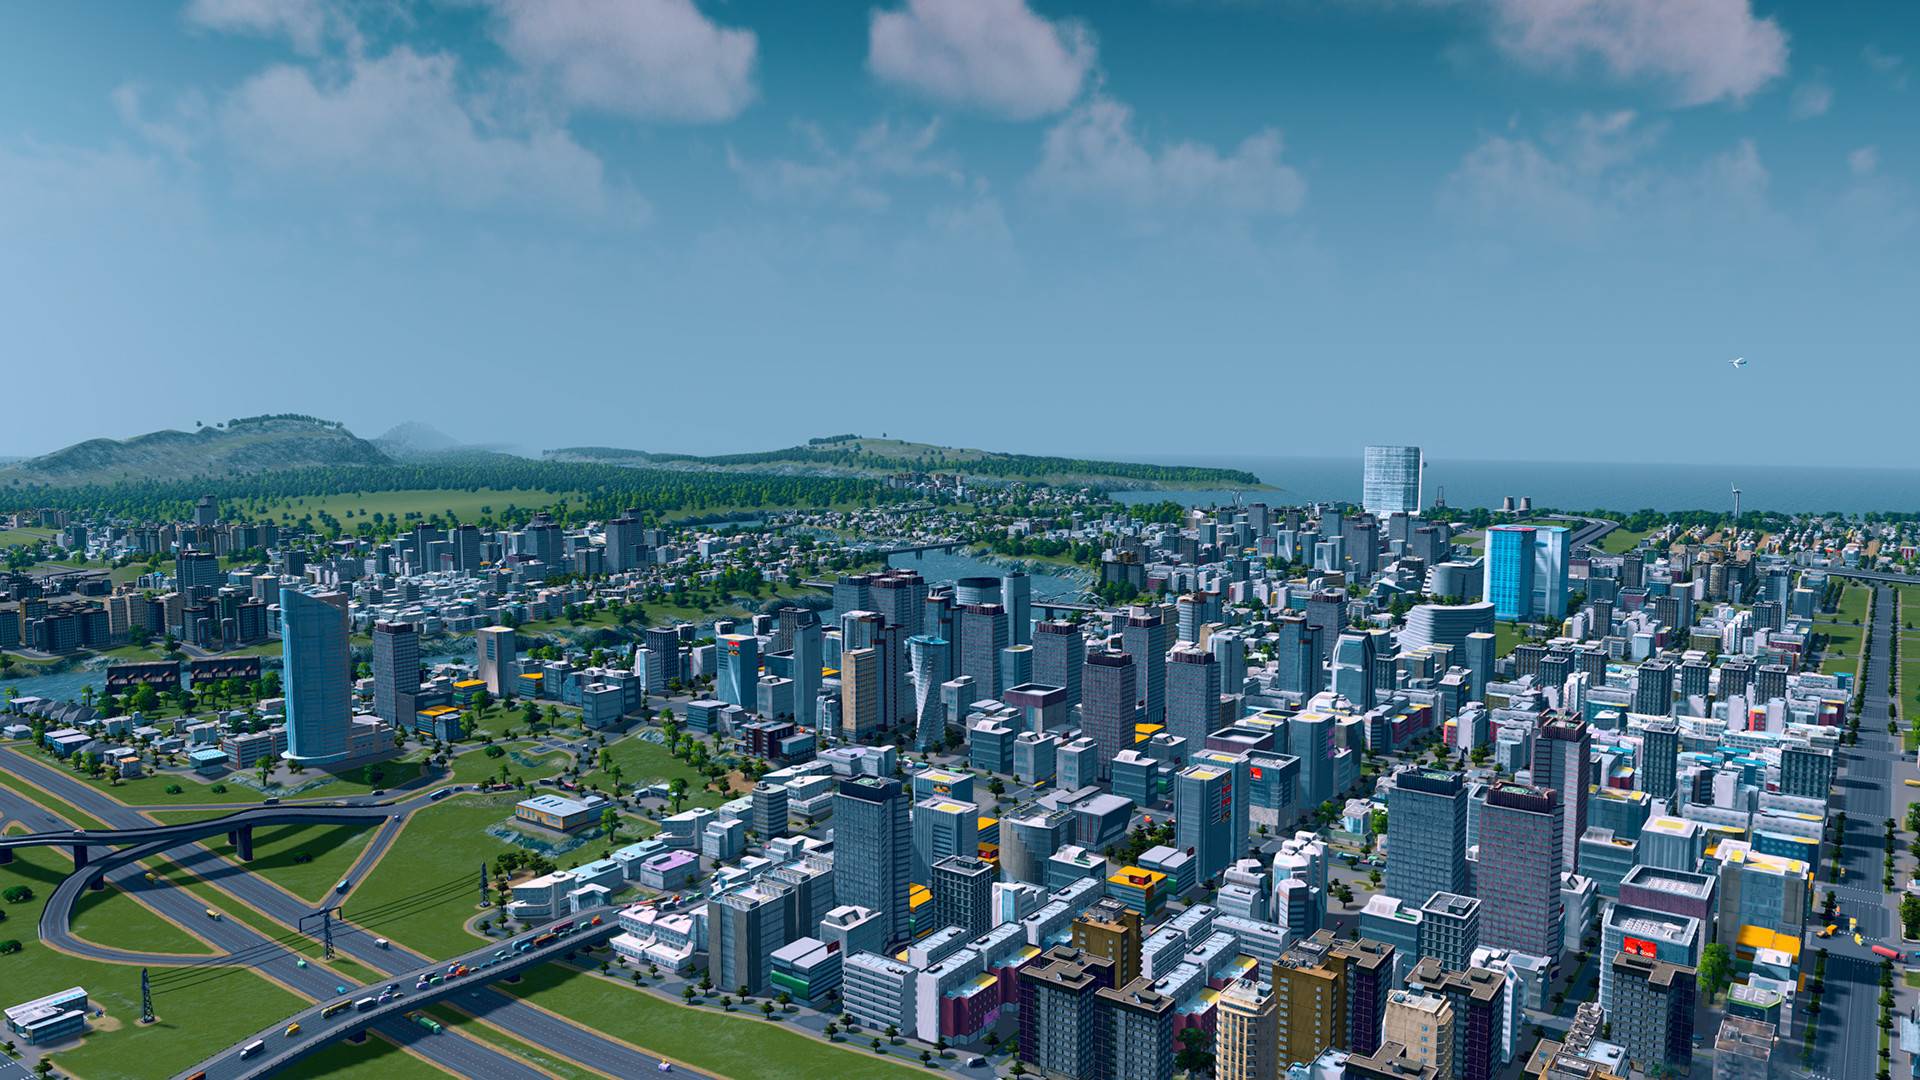 Los mejores juegos de construcción de la ciudad: Ciudades: Skylines. La imagen muestra una ciudad extensa llena de rascacielos